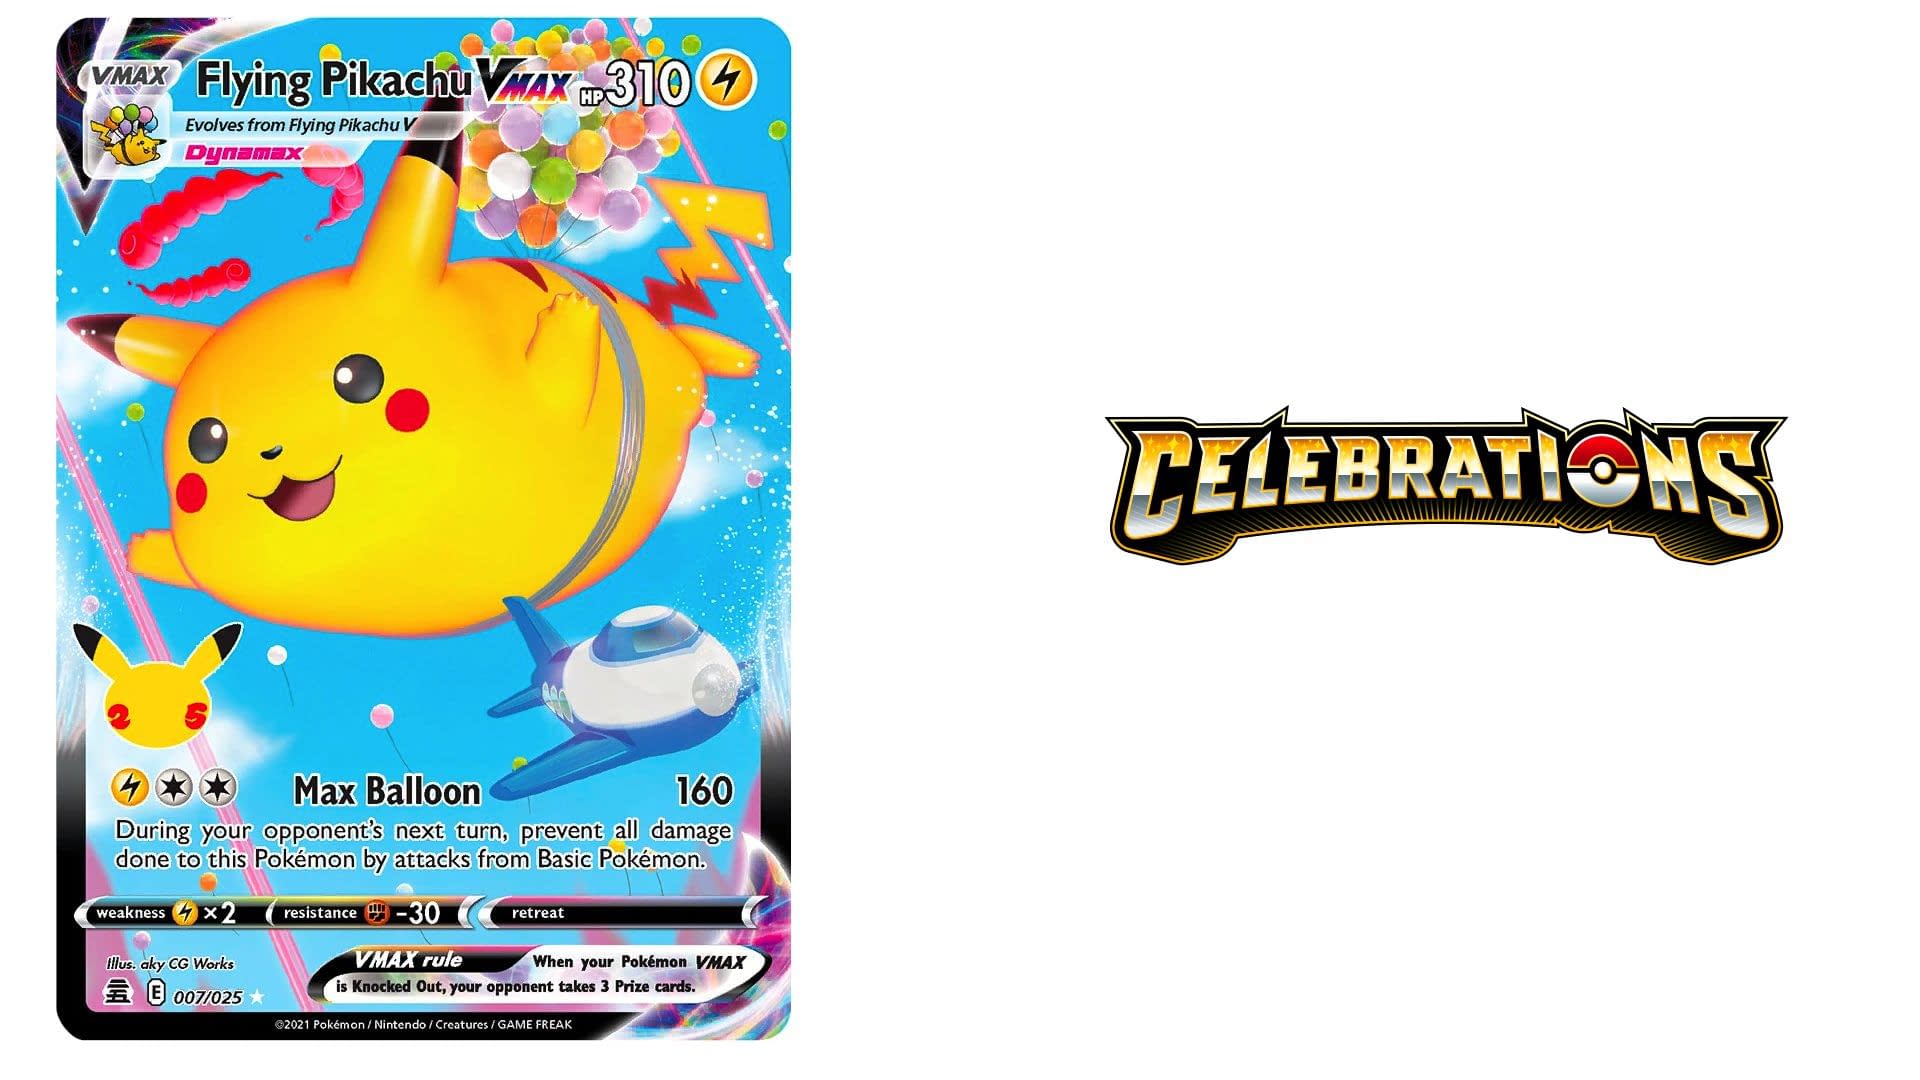 Eevee SUM 101  Pokemon TCG POK Cards